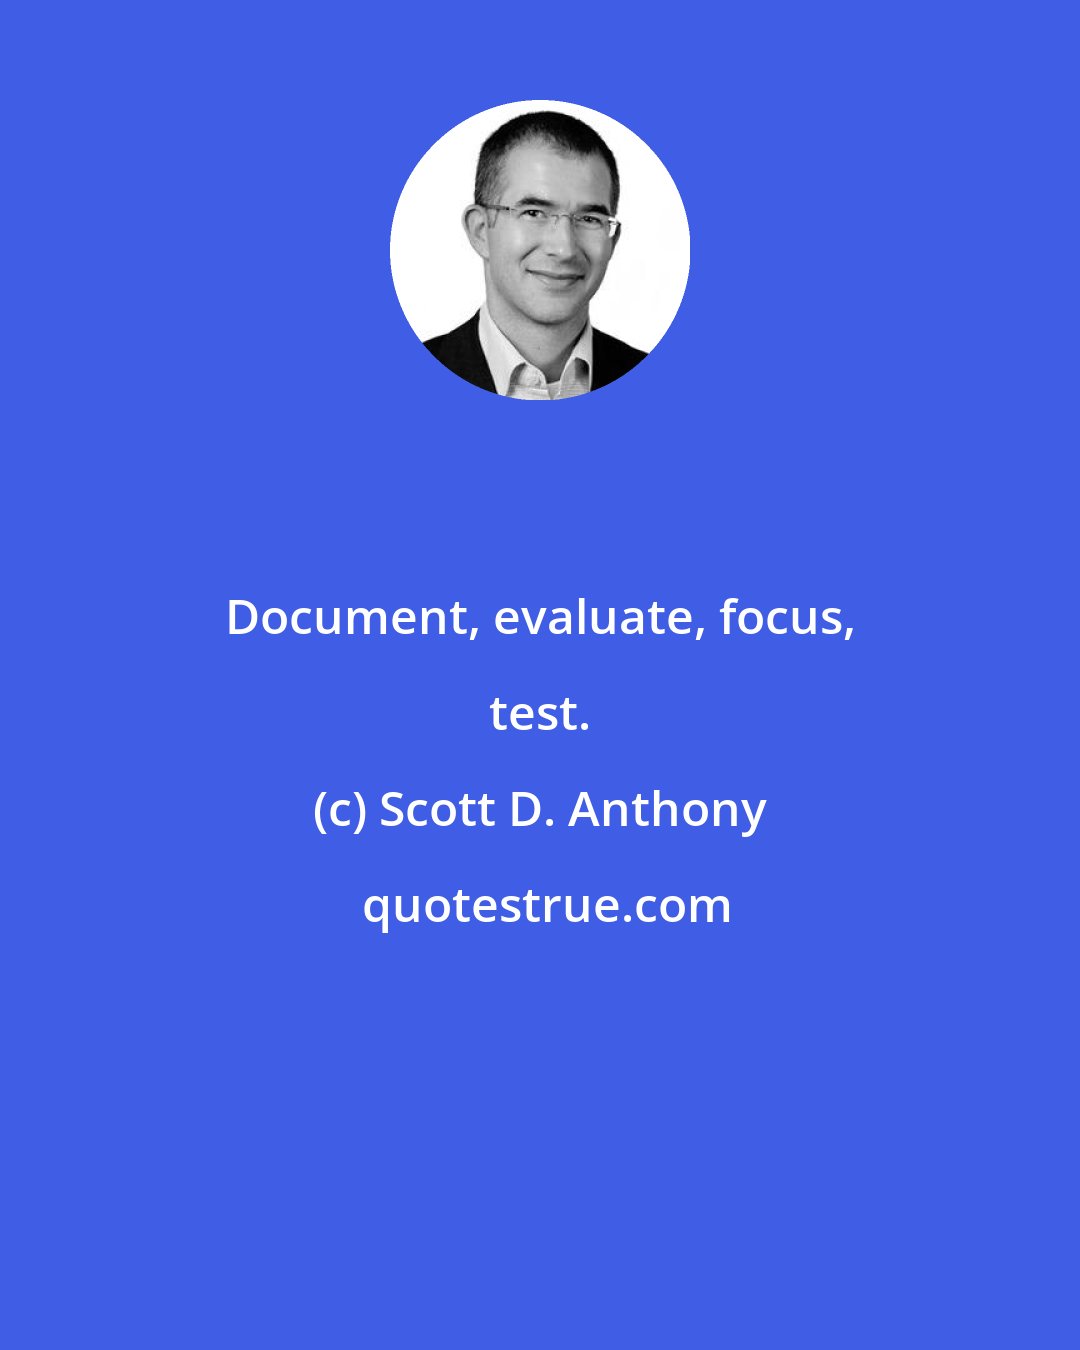 Scott D. Anthony: Document, evaluate, focus, test.